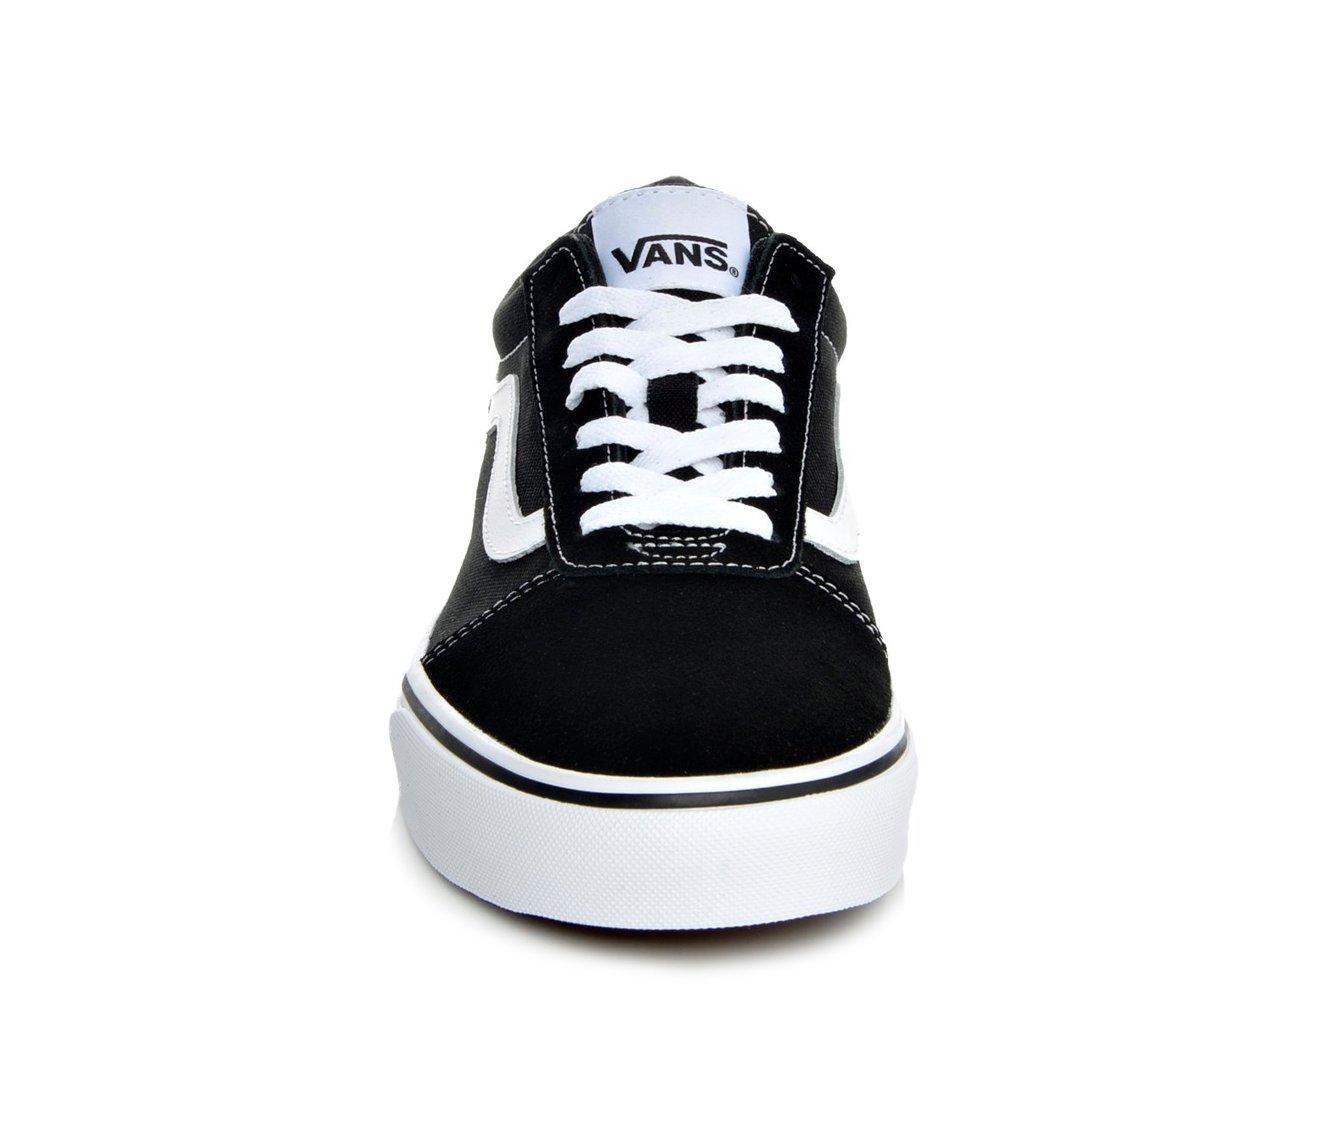 Vans Men's Ward Sneakers